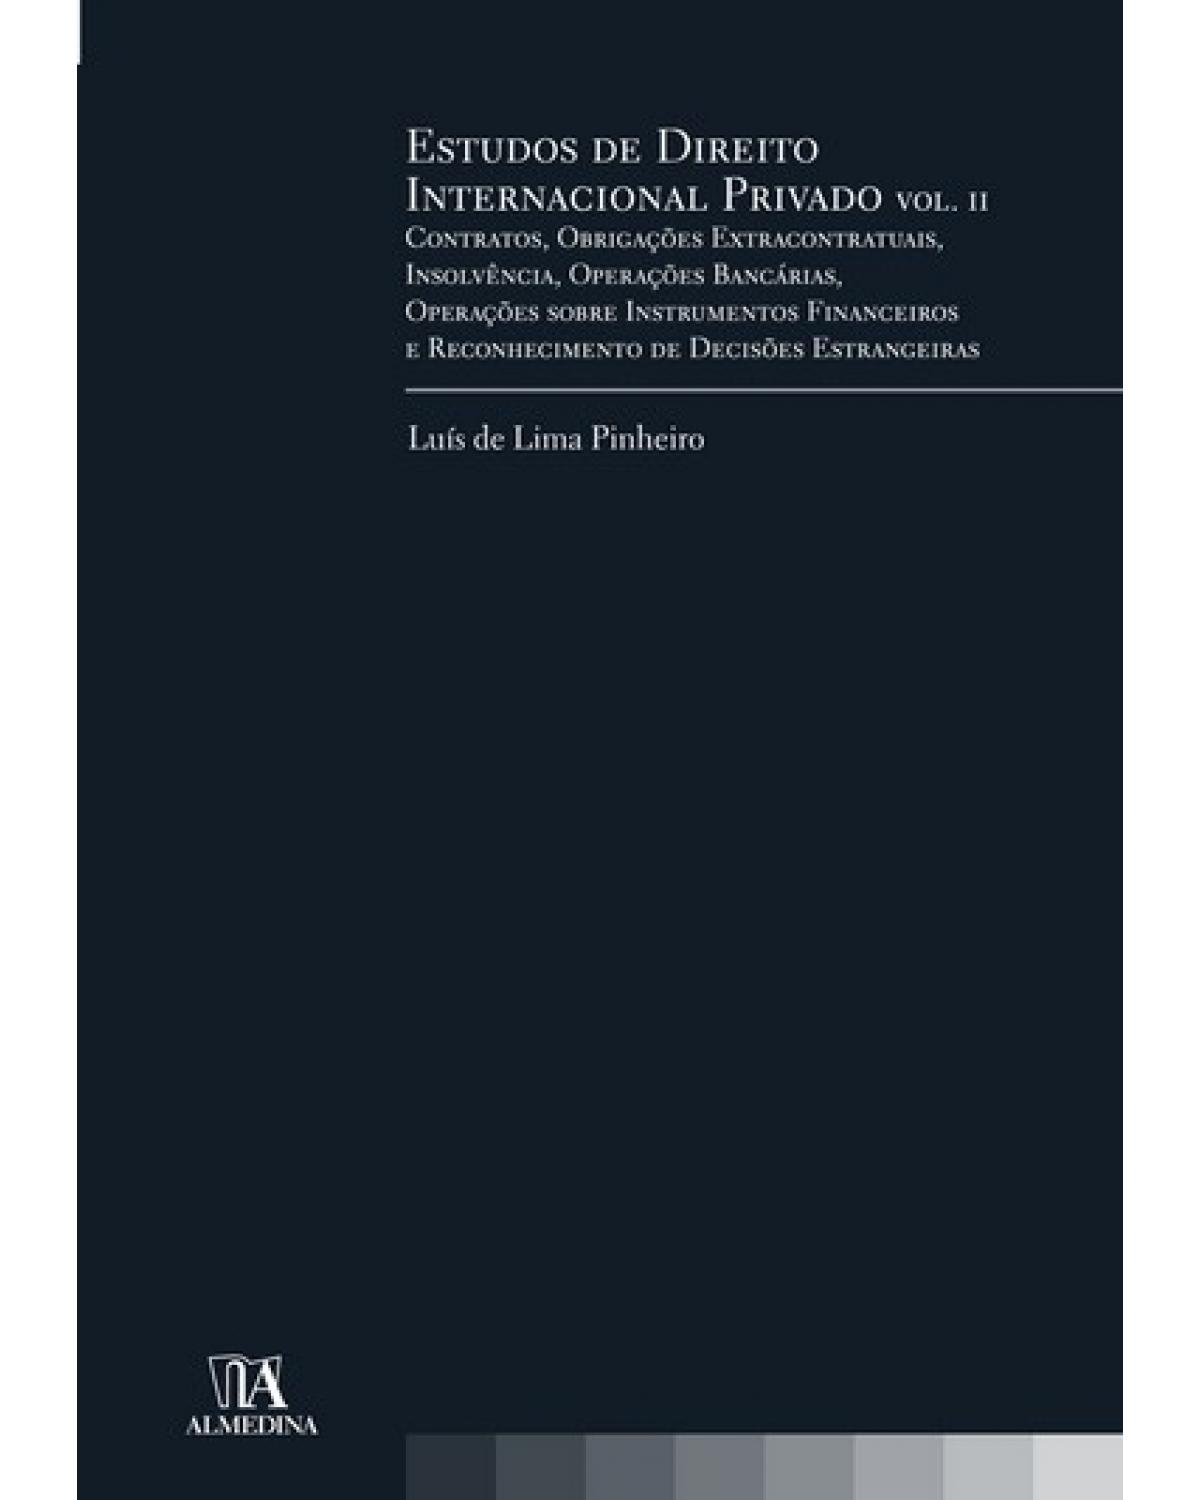 Estudos de direito internacional privado  - Volume 2: contratos, obrigações extracontratuais, insolvência, operações bancárias, operações sobre instrumentos financeiros e reconhecimento de decisões estrangeiras - 1ª Edição | 2009